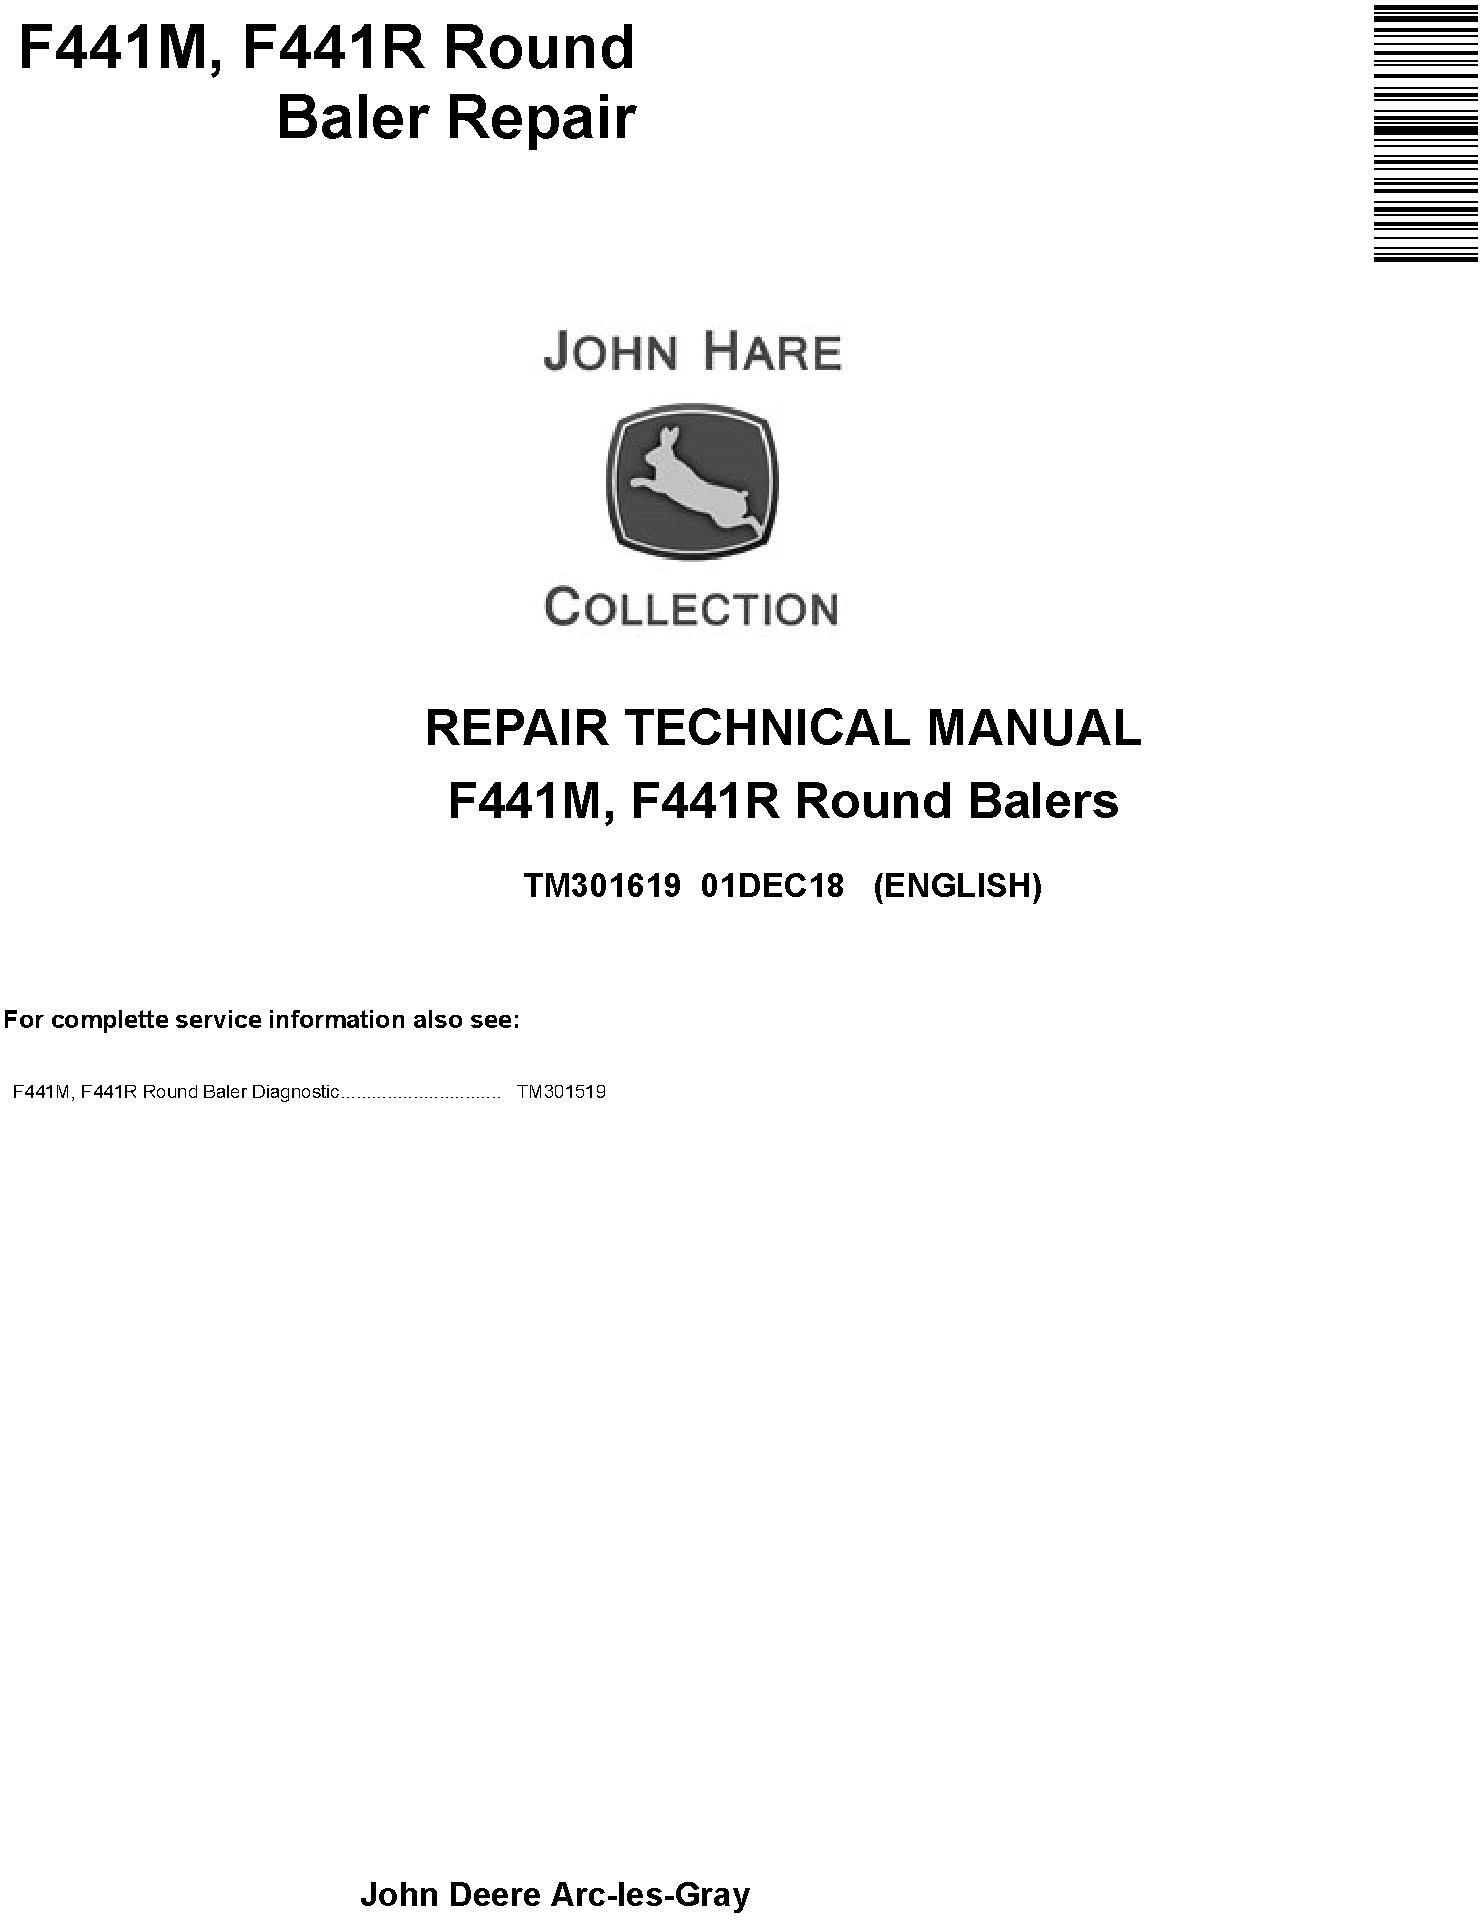 John Deere F441M F441R Round Balers Repair Technical Manual TM301619